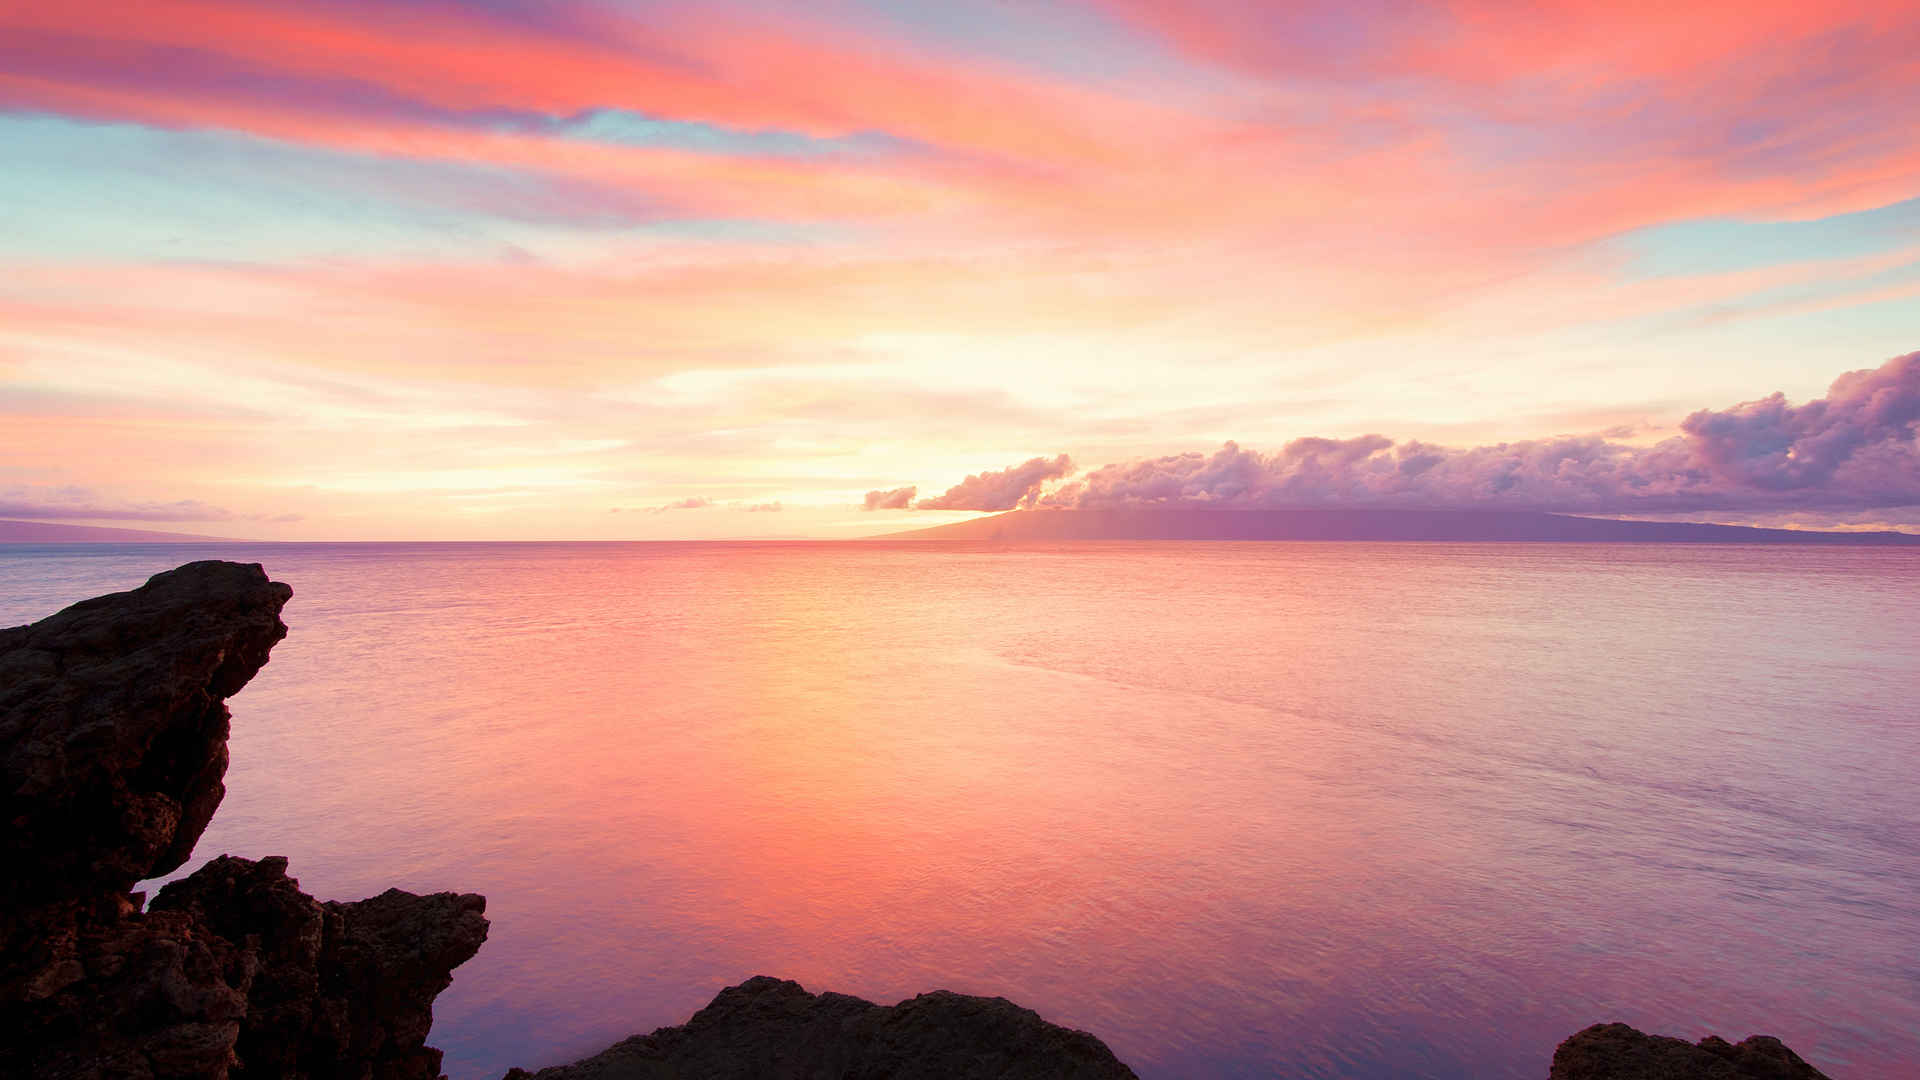 夏威夷毛伊岛海岸落日夕阳图片唯美